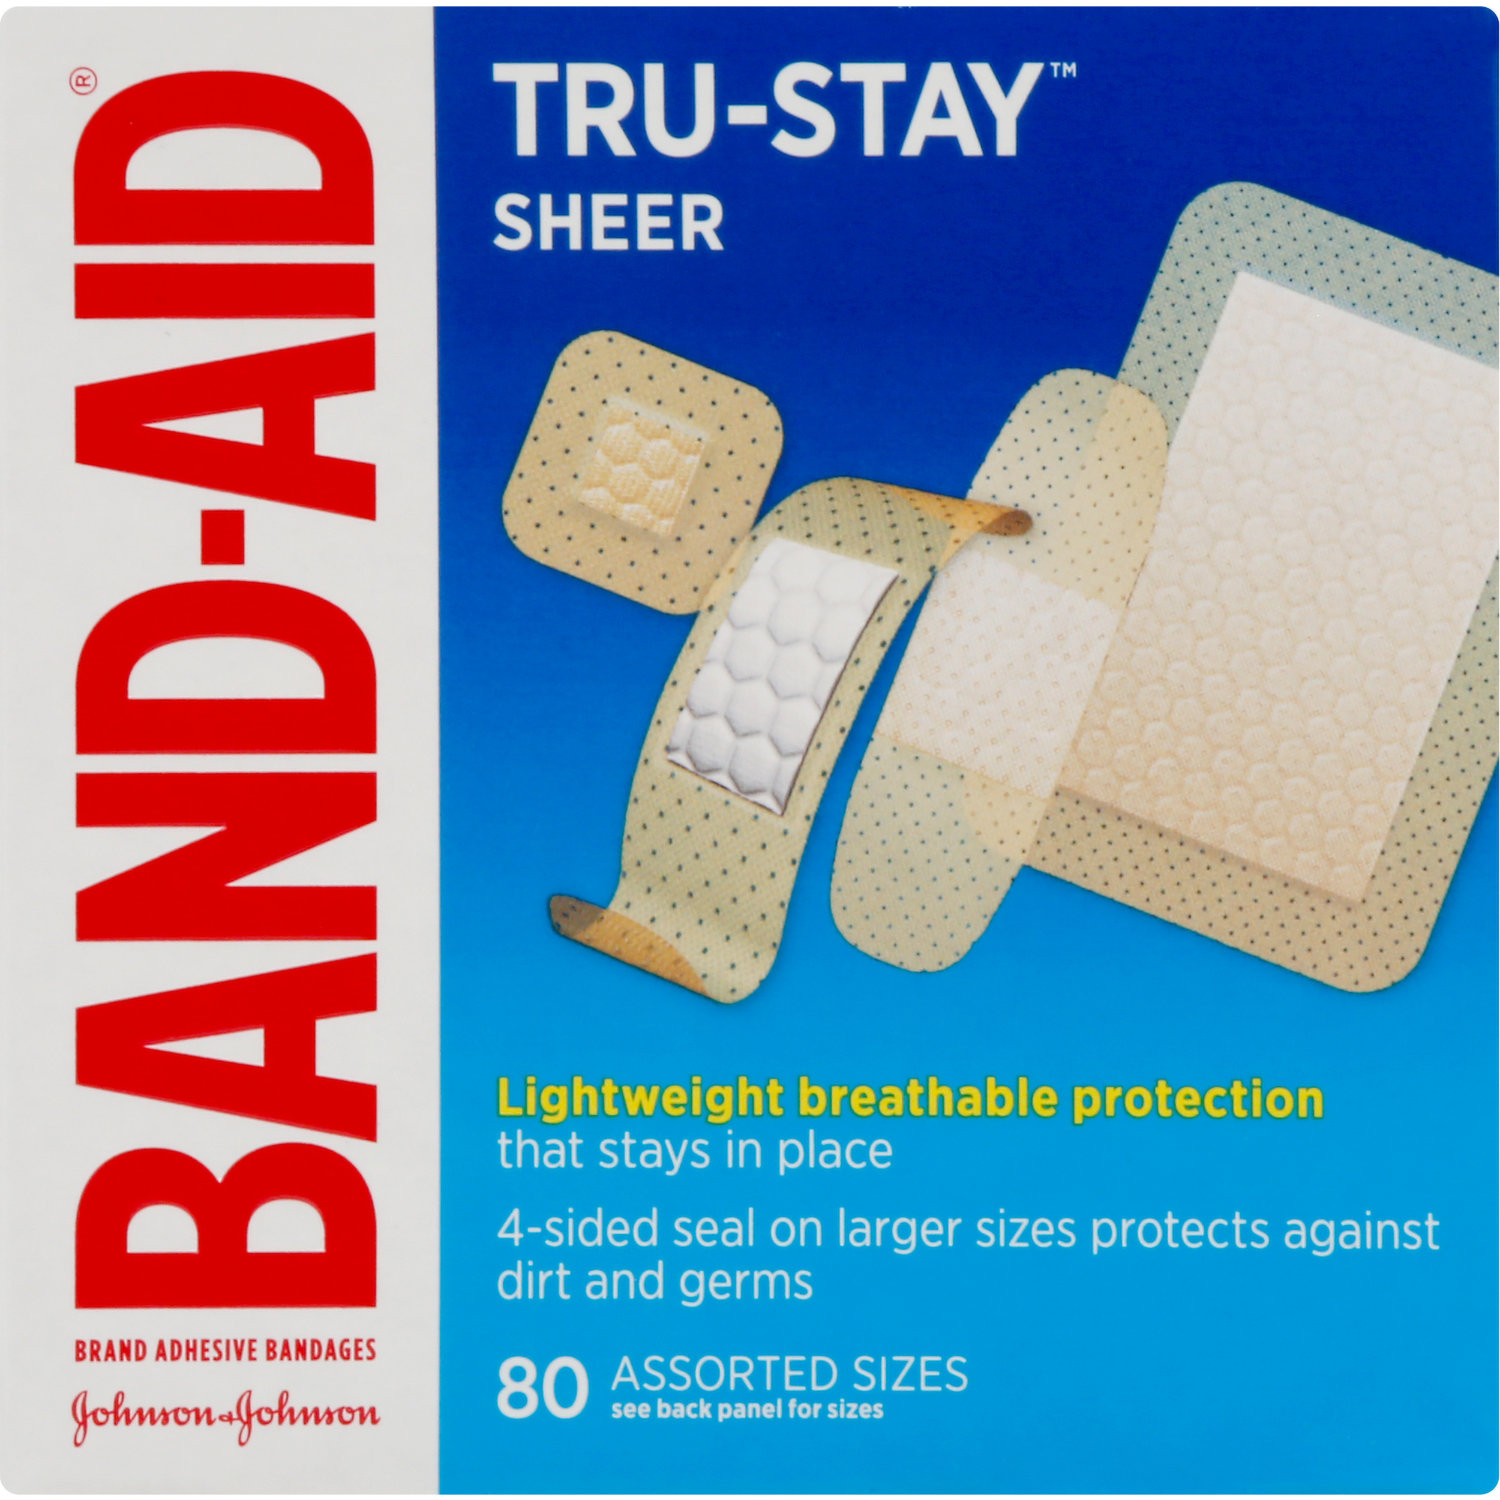 Band Aid Bandages, Adhesive, Flexible Fabric, Assorted Sizes